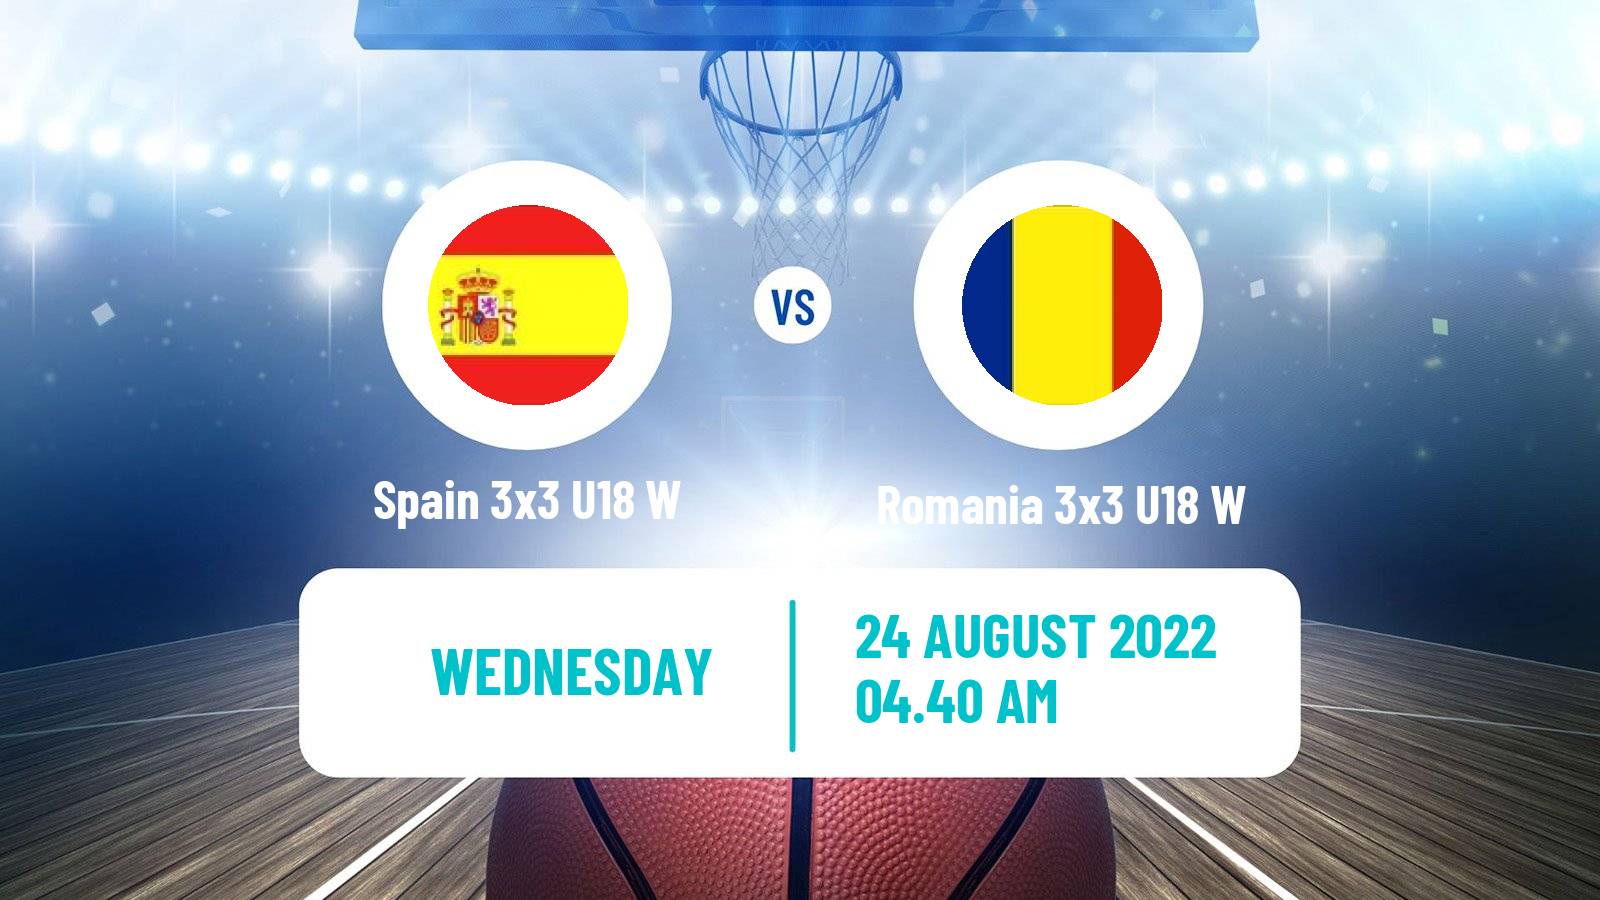 Basketball World Cup Basketball 3x3 U18 Women Spain 3x3 U18 W - Romania 3x3 U18 W